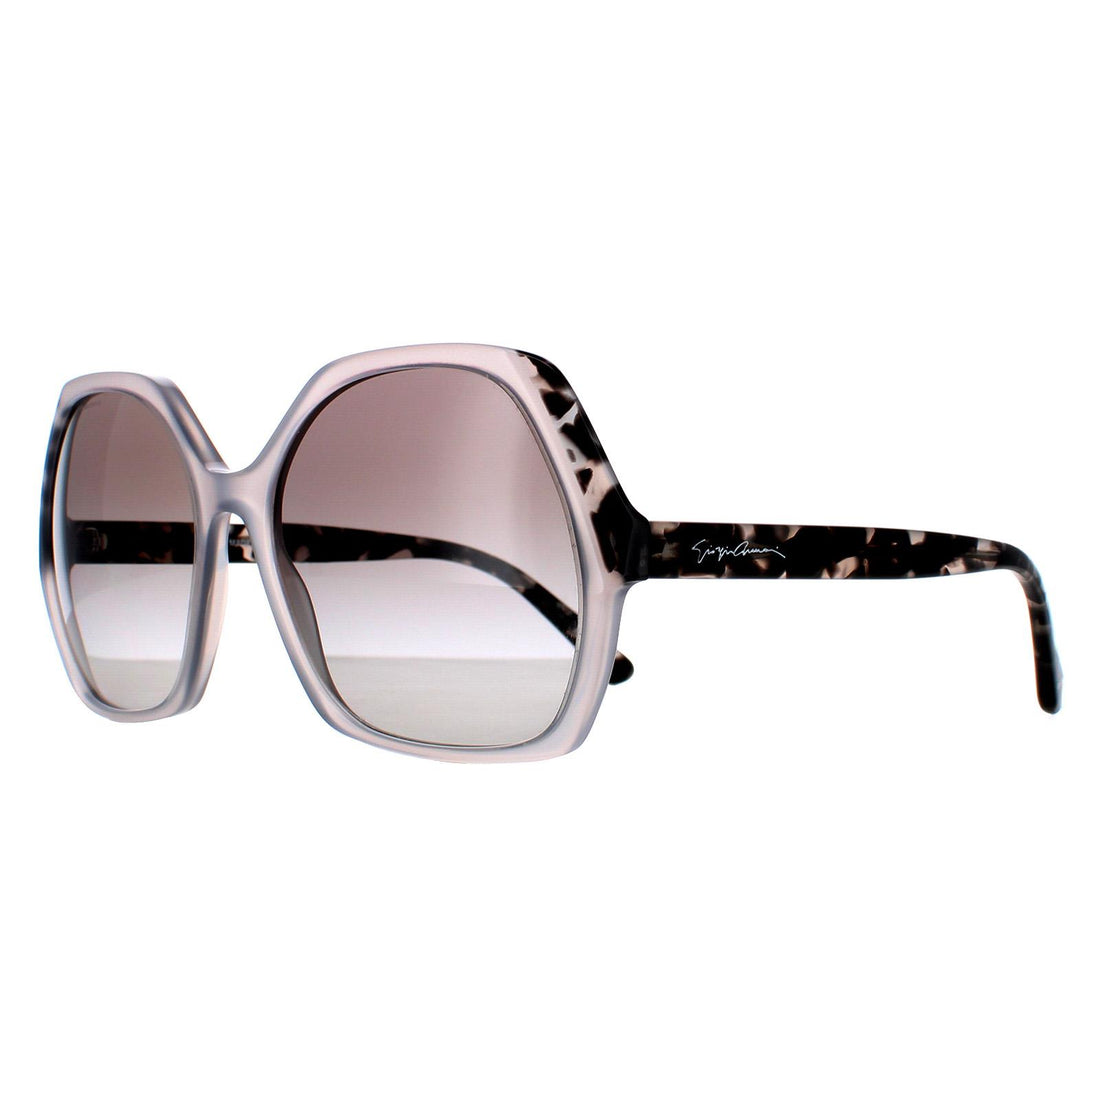 Giorgio Armani AR8099 Sunglasses